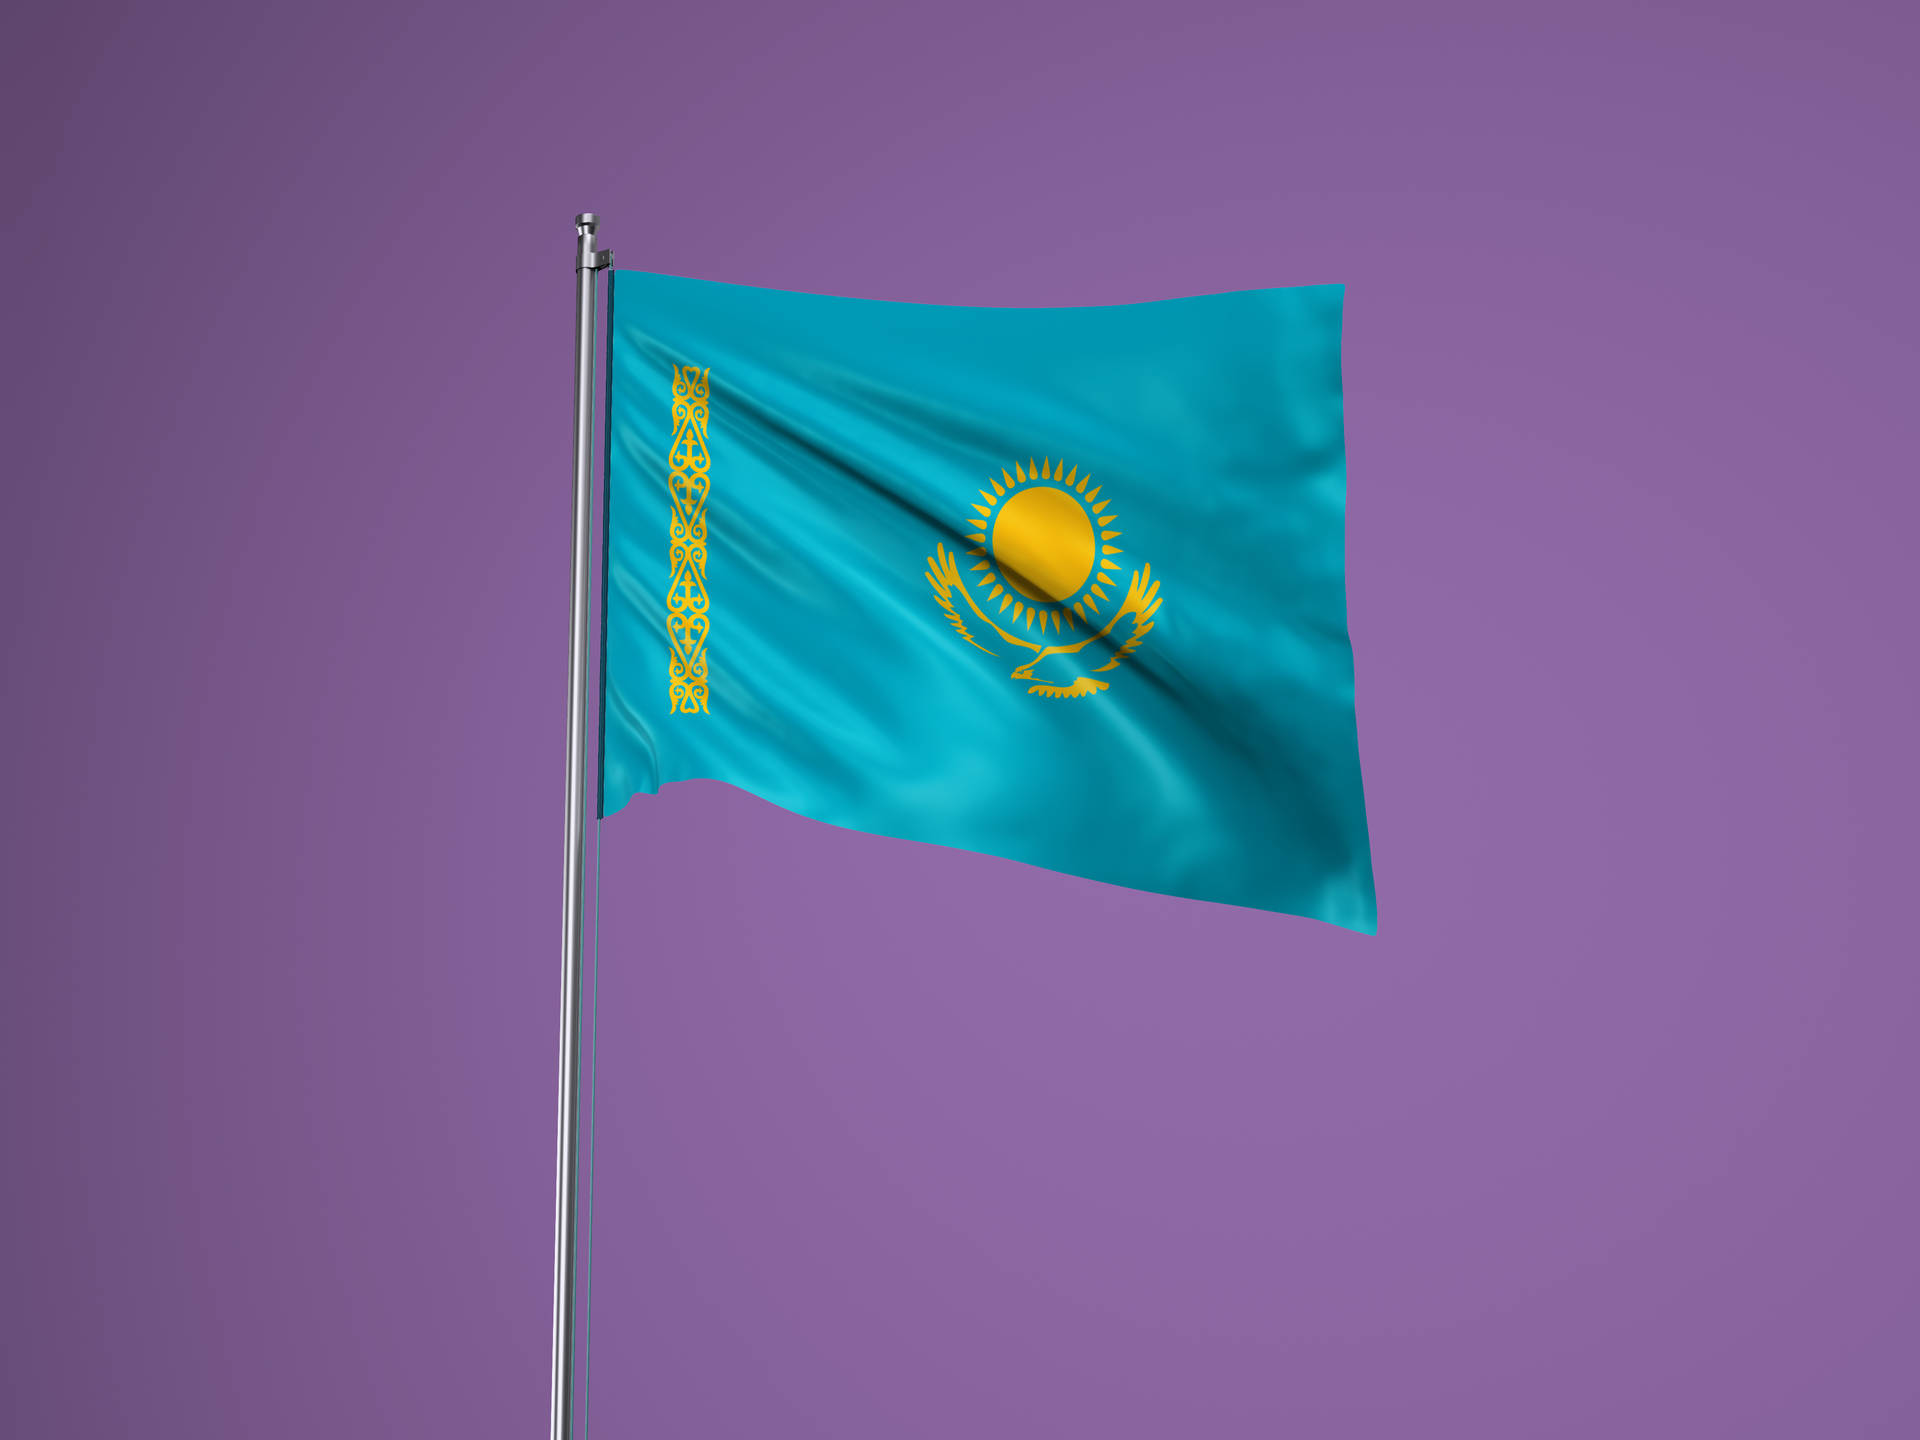 Banderade Kazajstán En Un Mástil Fondo de pantalla